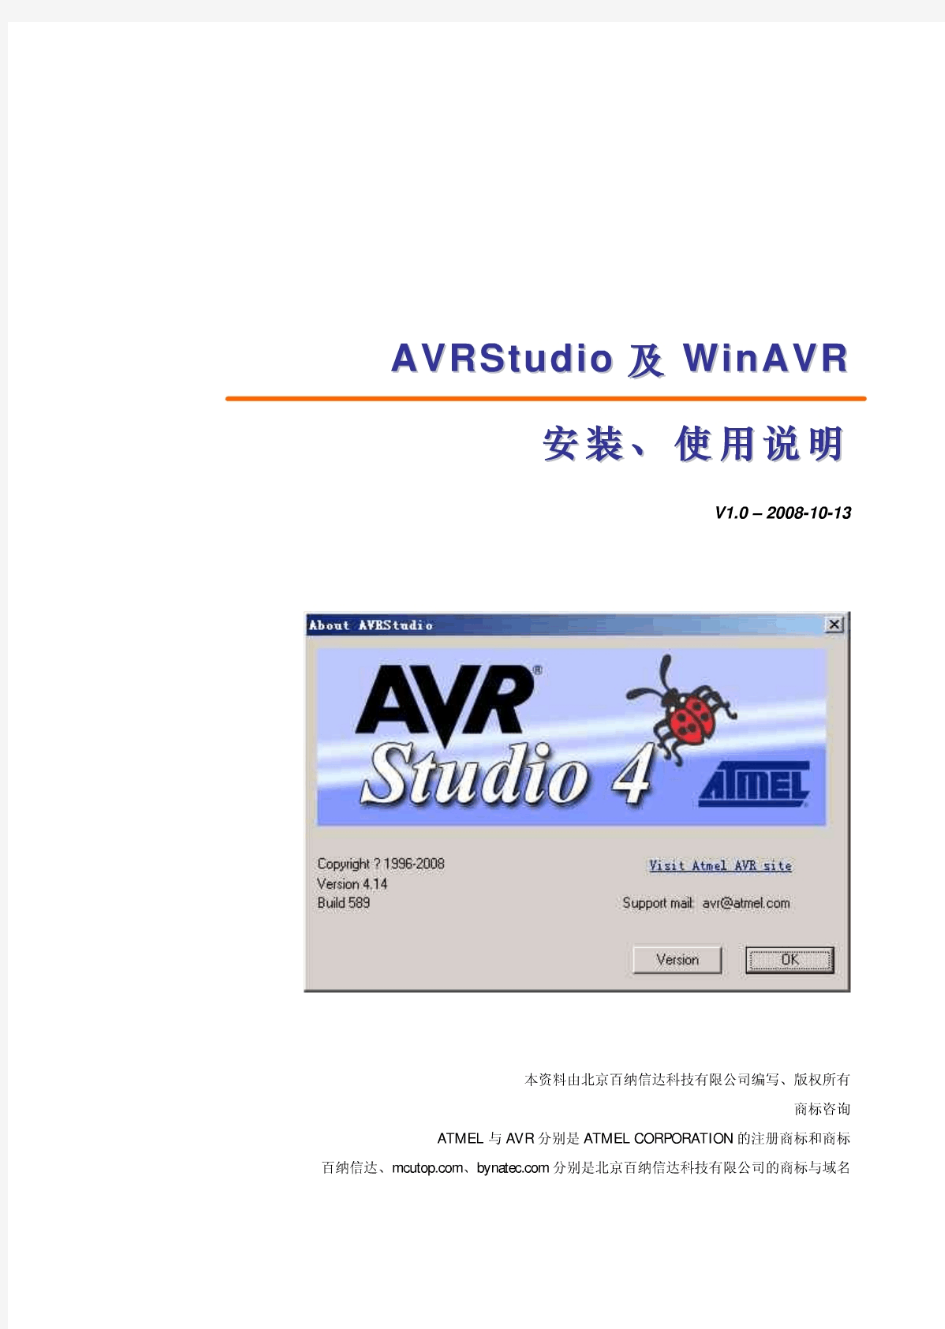 AVRStudio及WinAVR 的安装、使用说明v1.0